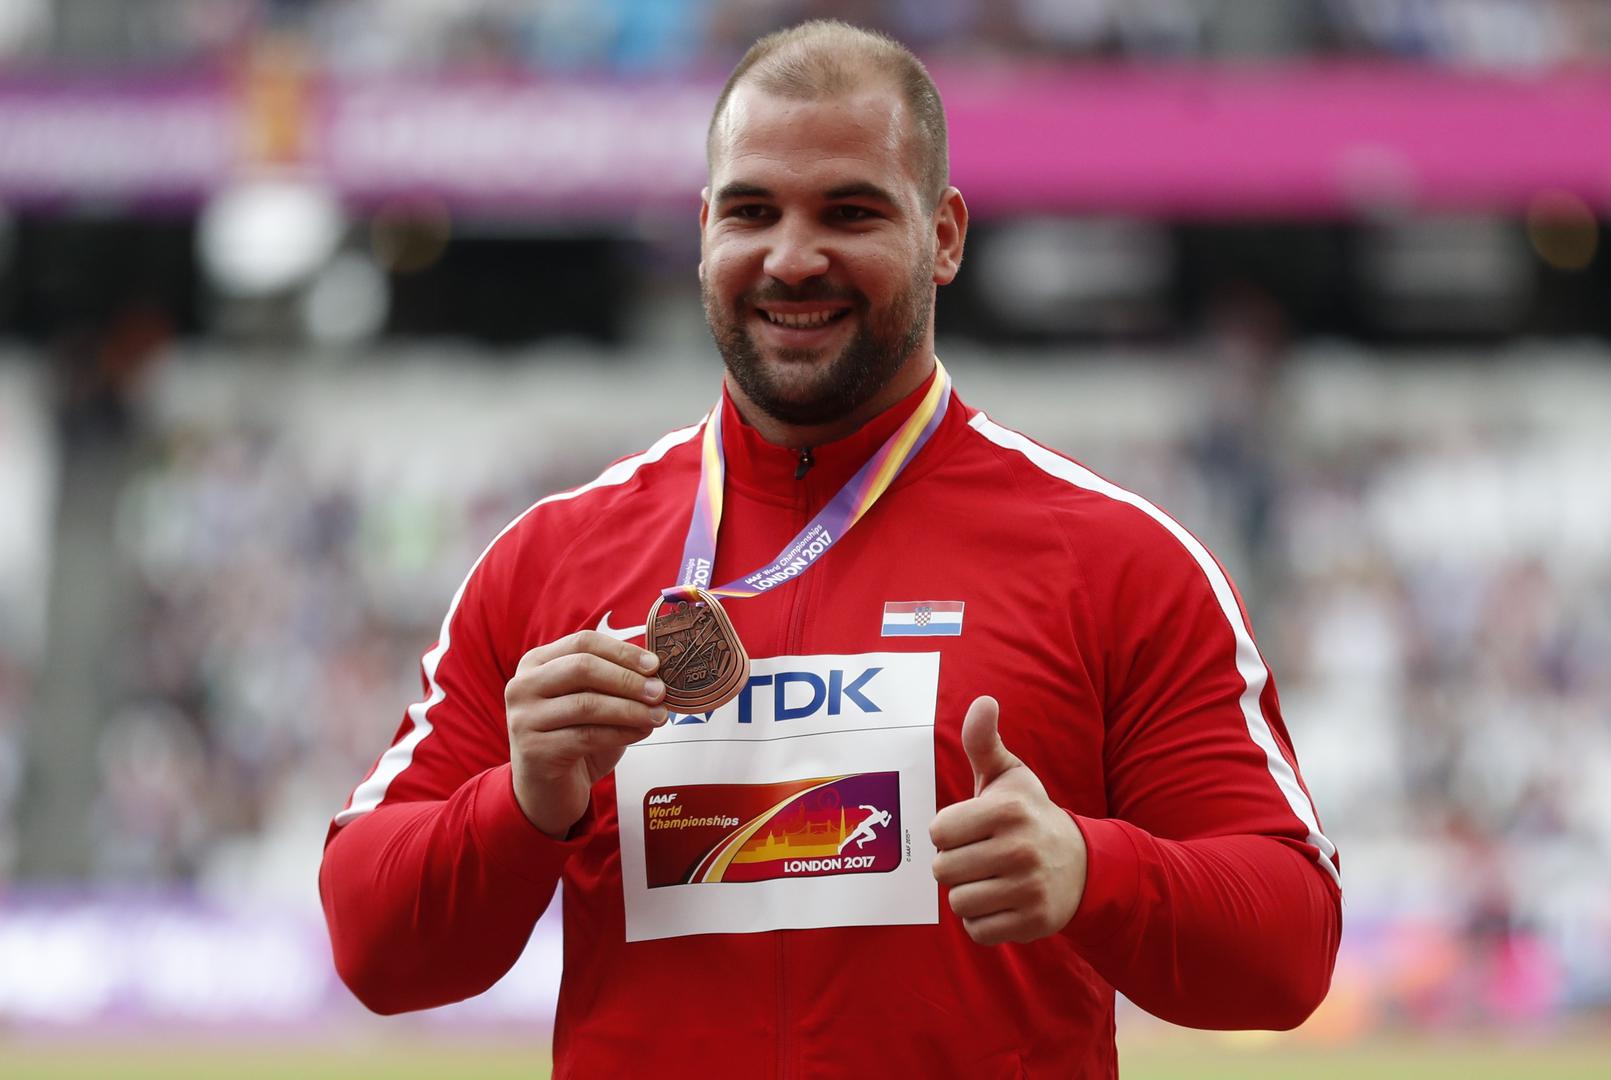 Hrvatski rekorder Stipe Žunić je hicem od 21,46 metara osvojio svjetsku broncu. Danas mu je medalja i dodijeljena.